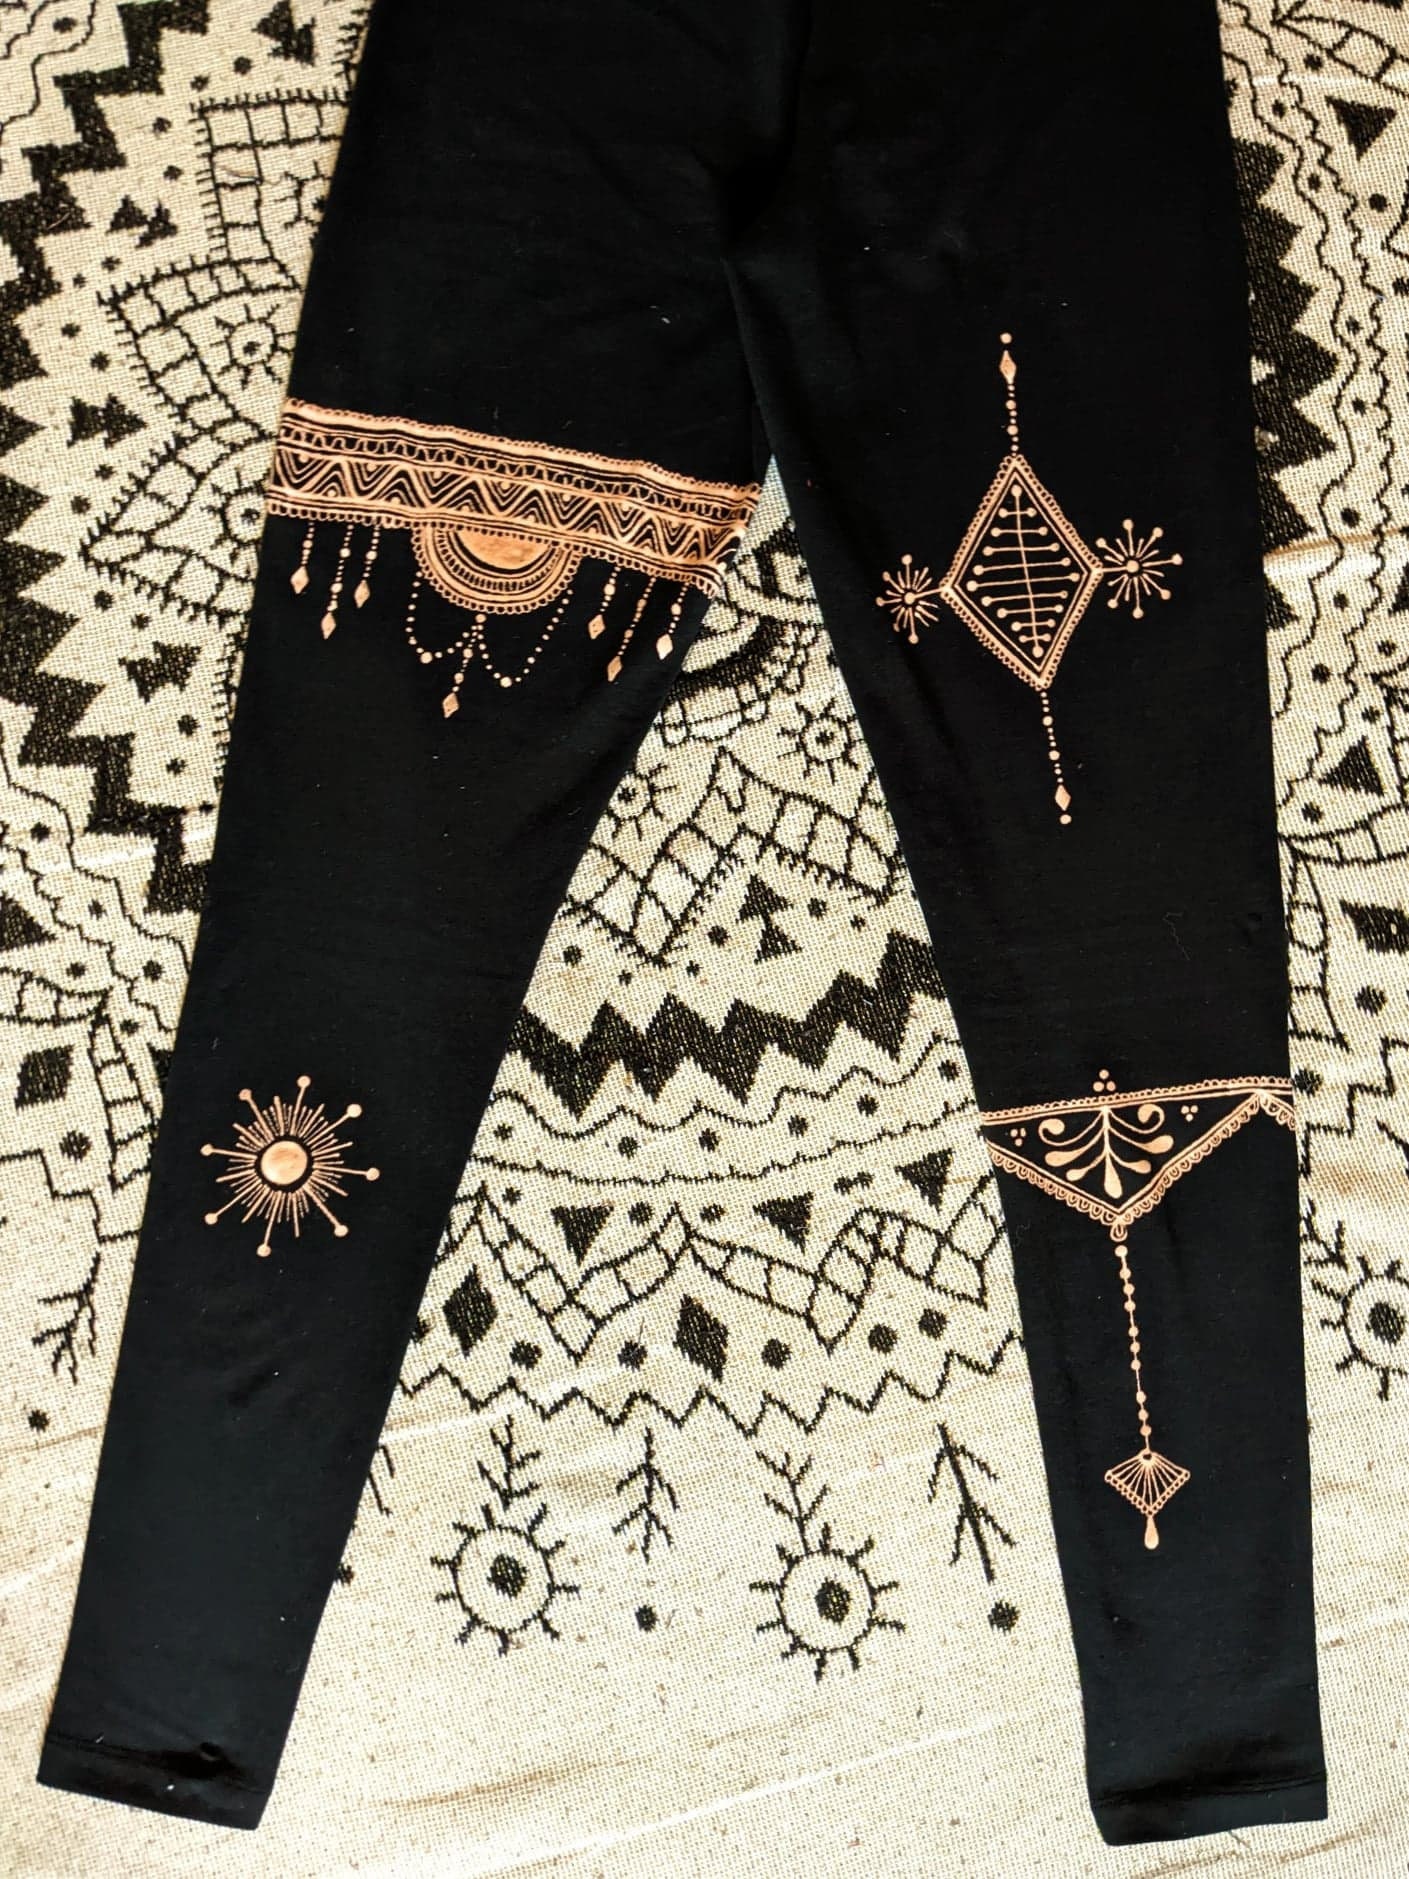 Golden Sun. Handmade Leggings. Yoga Meditation Flower Pants Hippy Ladies Womens Gift